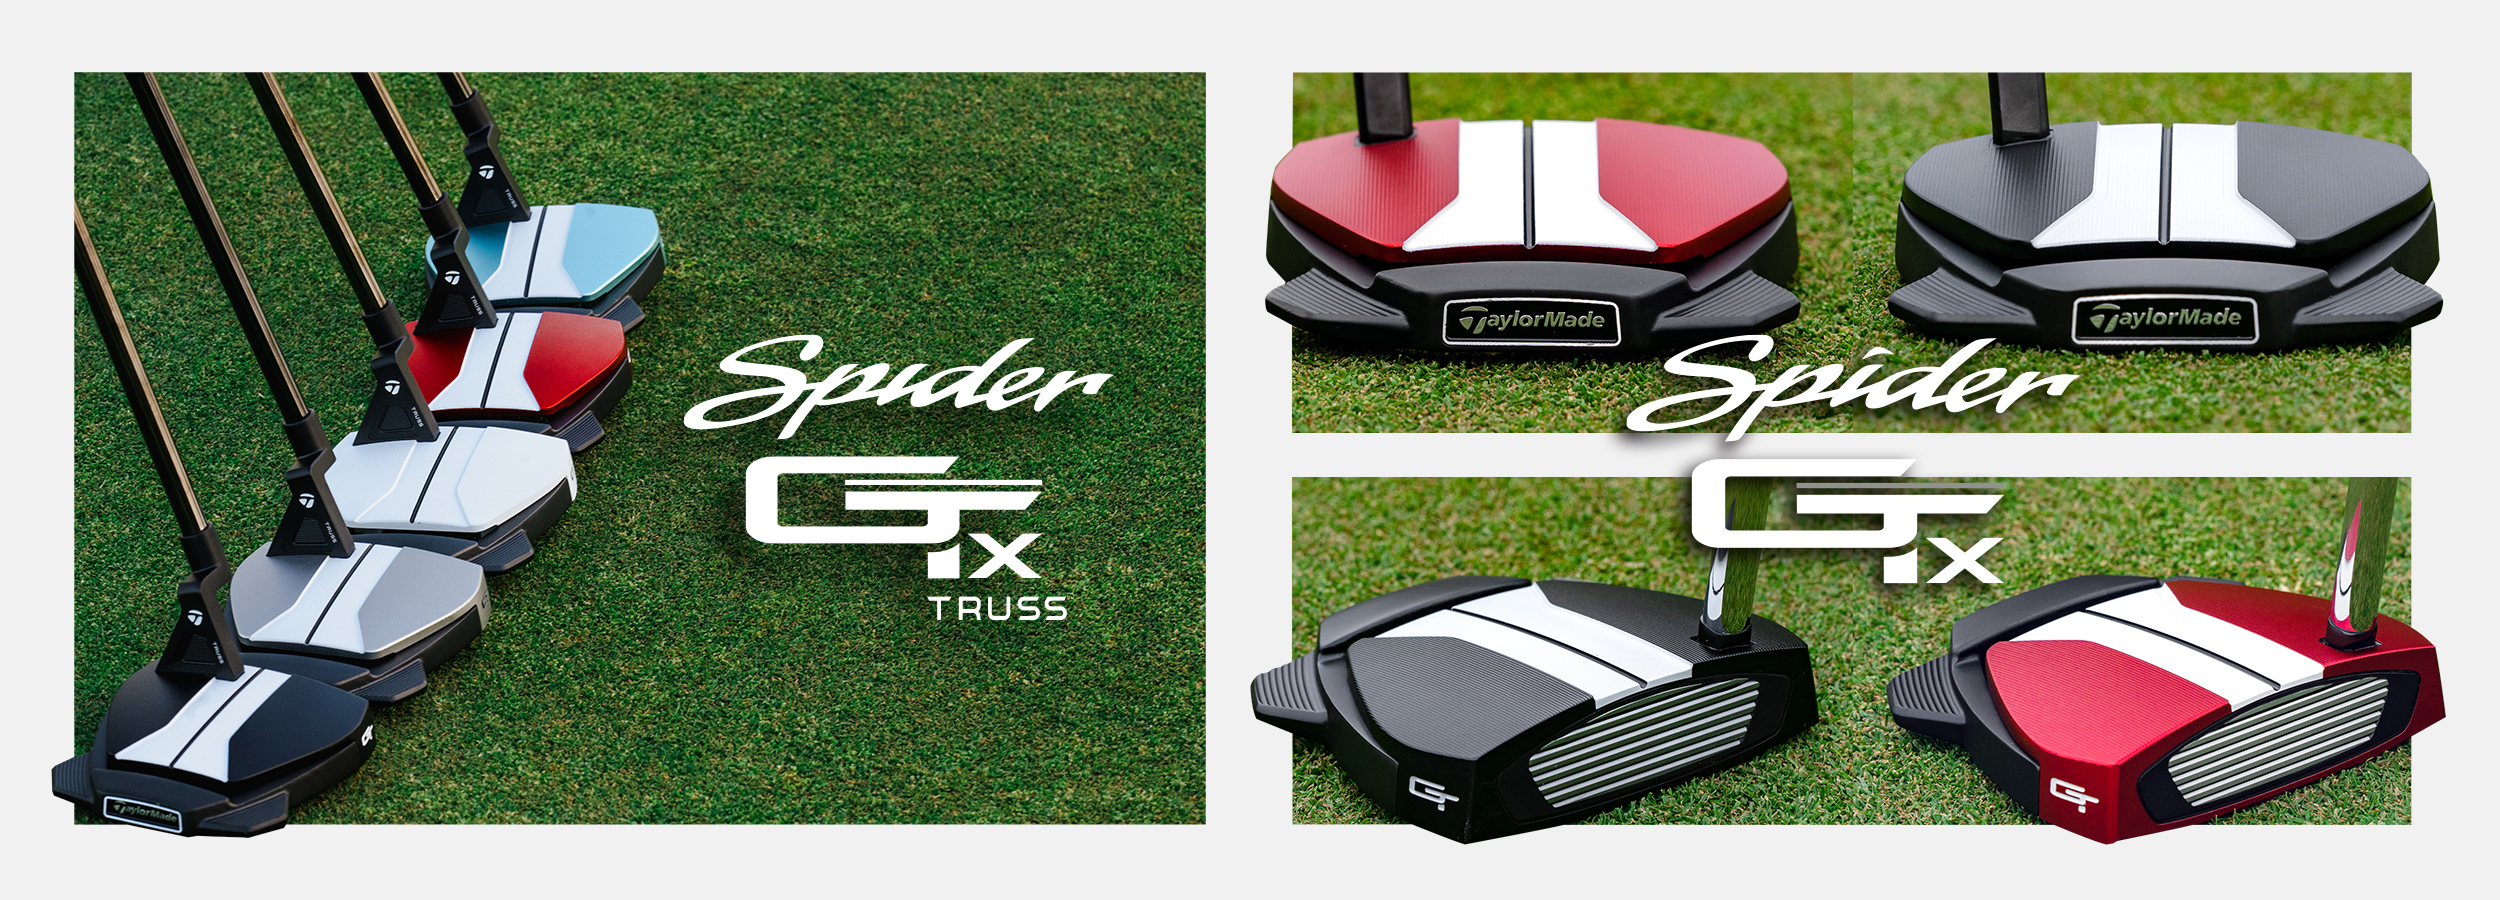 スパイダーGT X ブラック トラスセンター パター | SPIDER GT X BLACK TRUSS | TaylorMade Golf |  テーラーメイド ゴルフ公式サイト